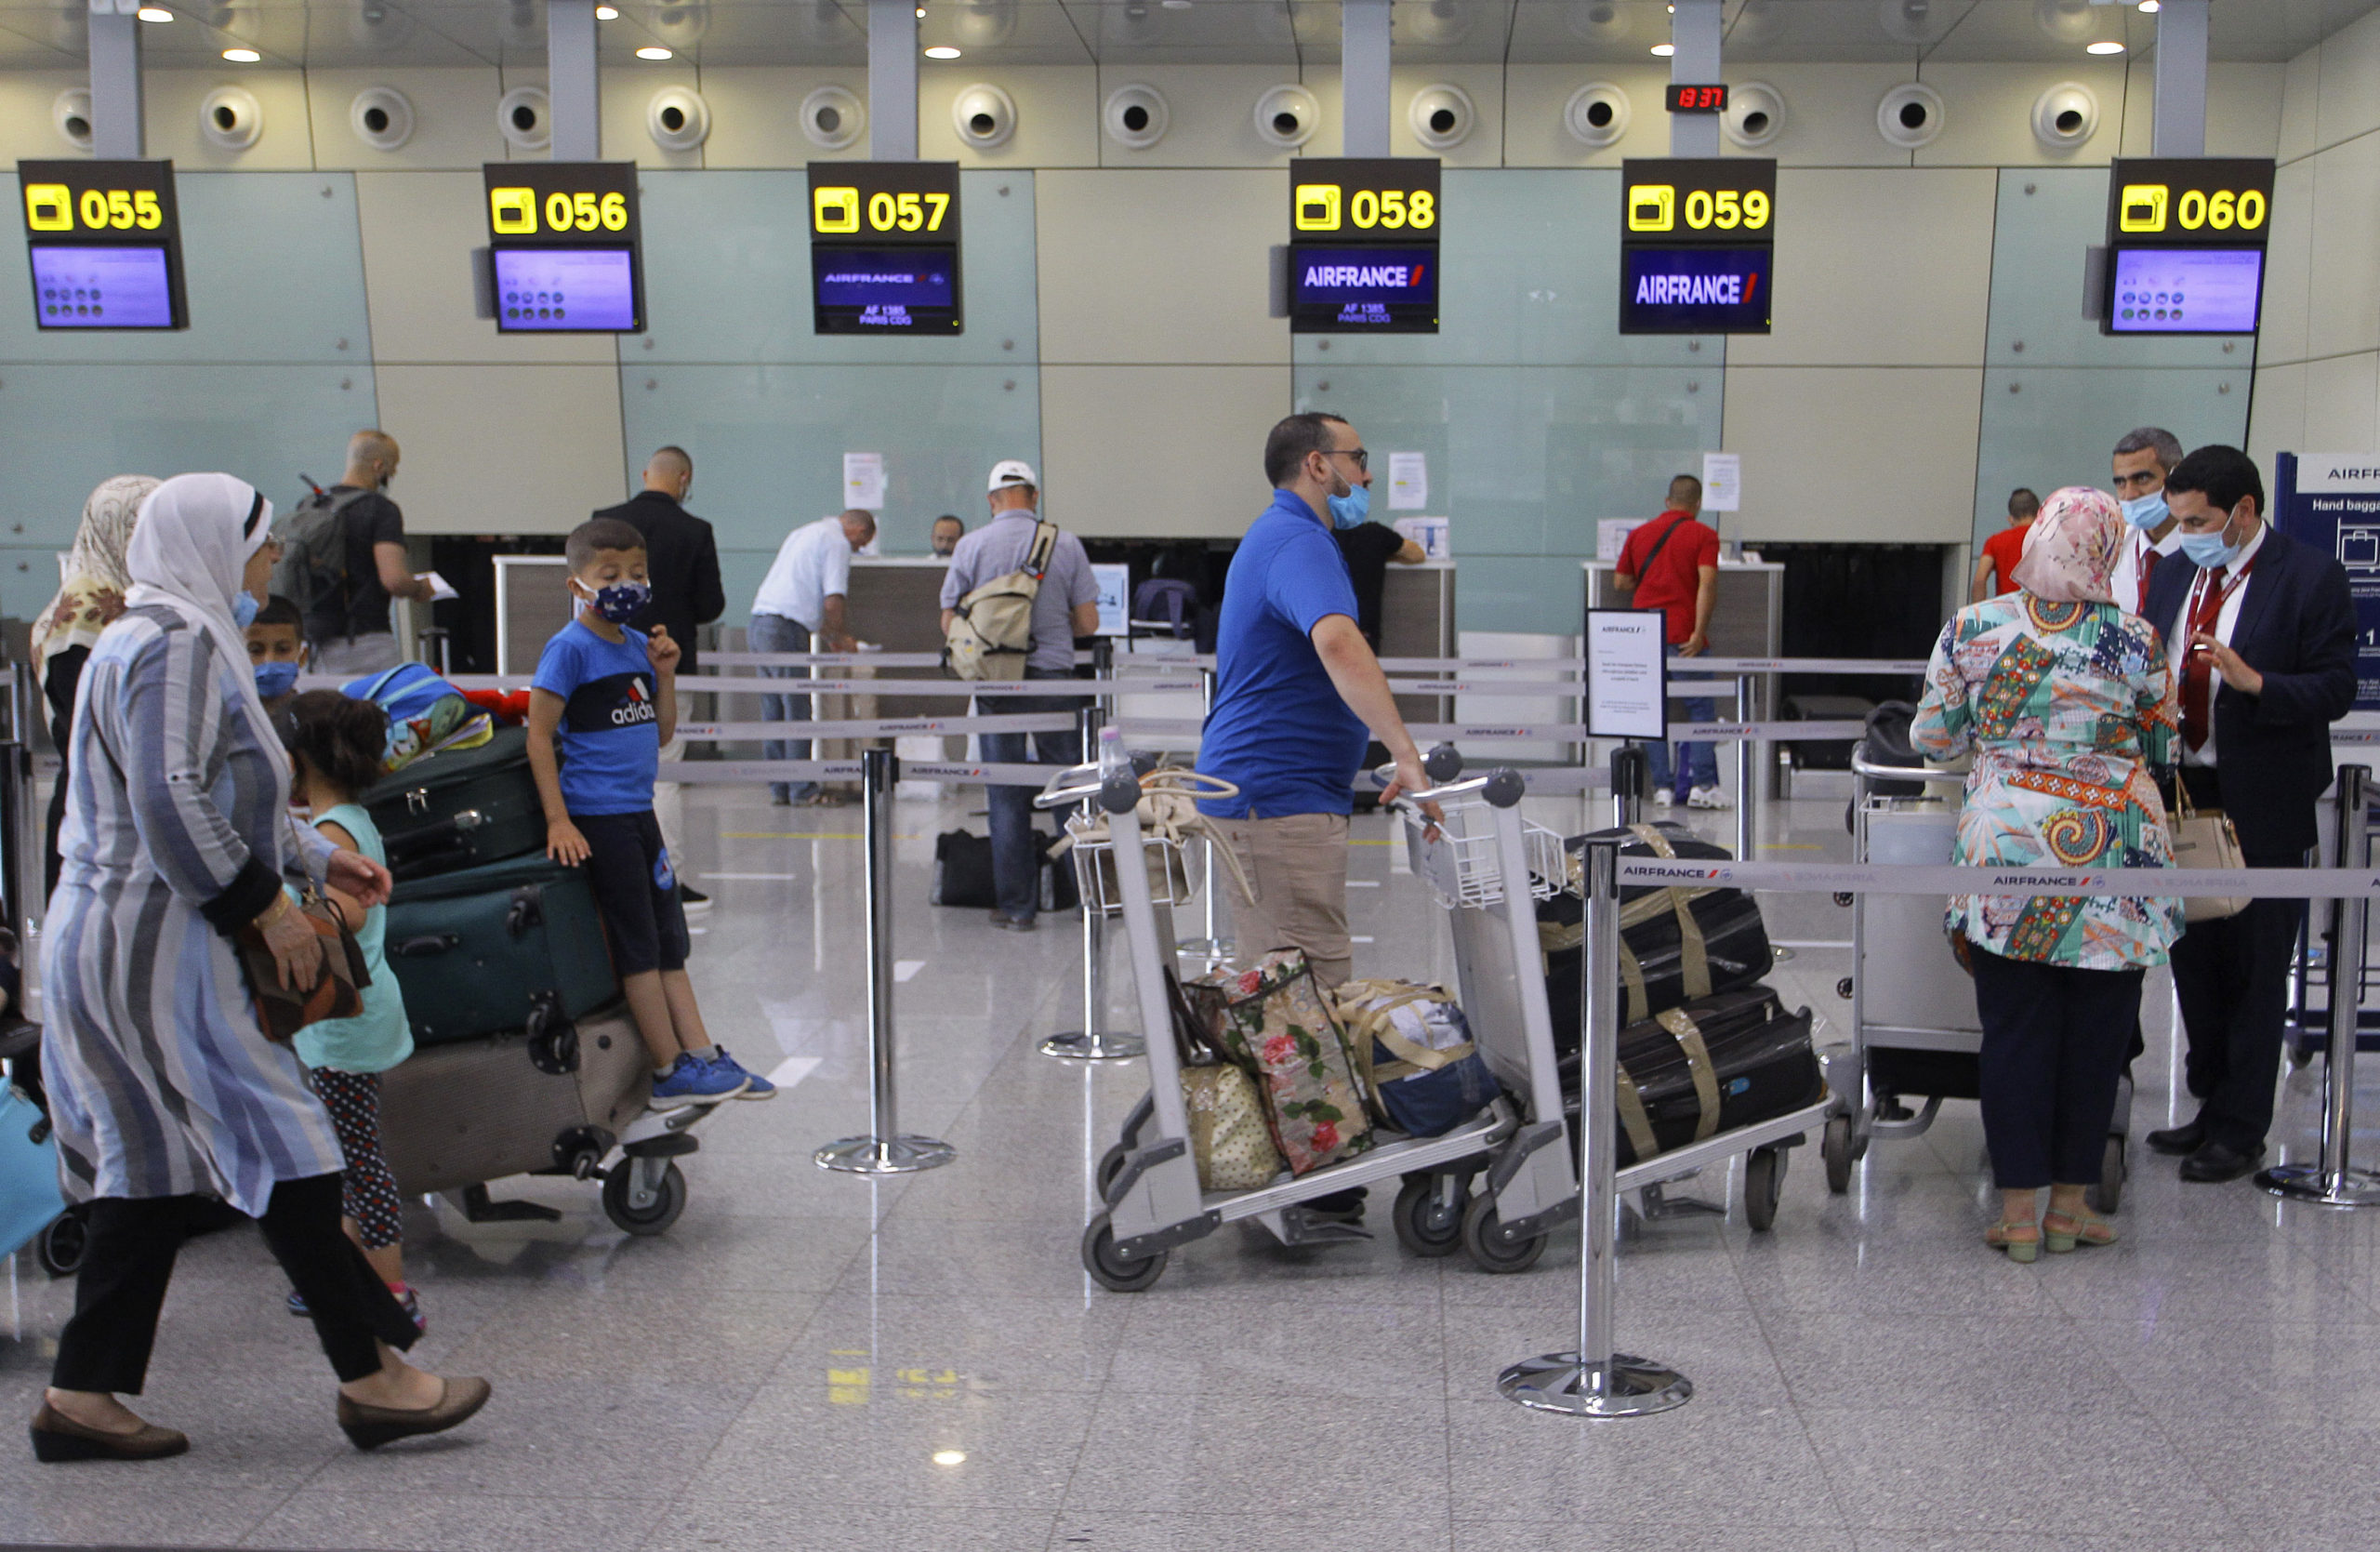 Wordt zomer 2021 een nachtmerrie van wachttijden op luchthavens?